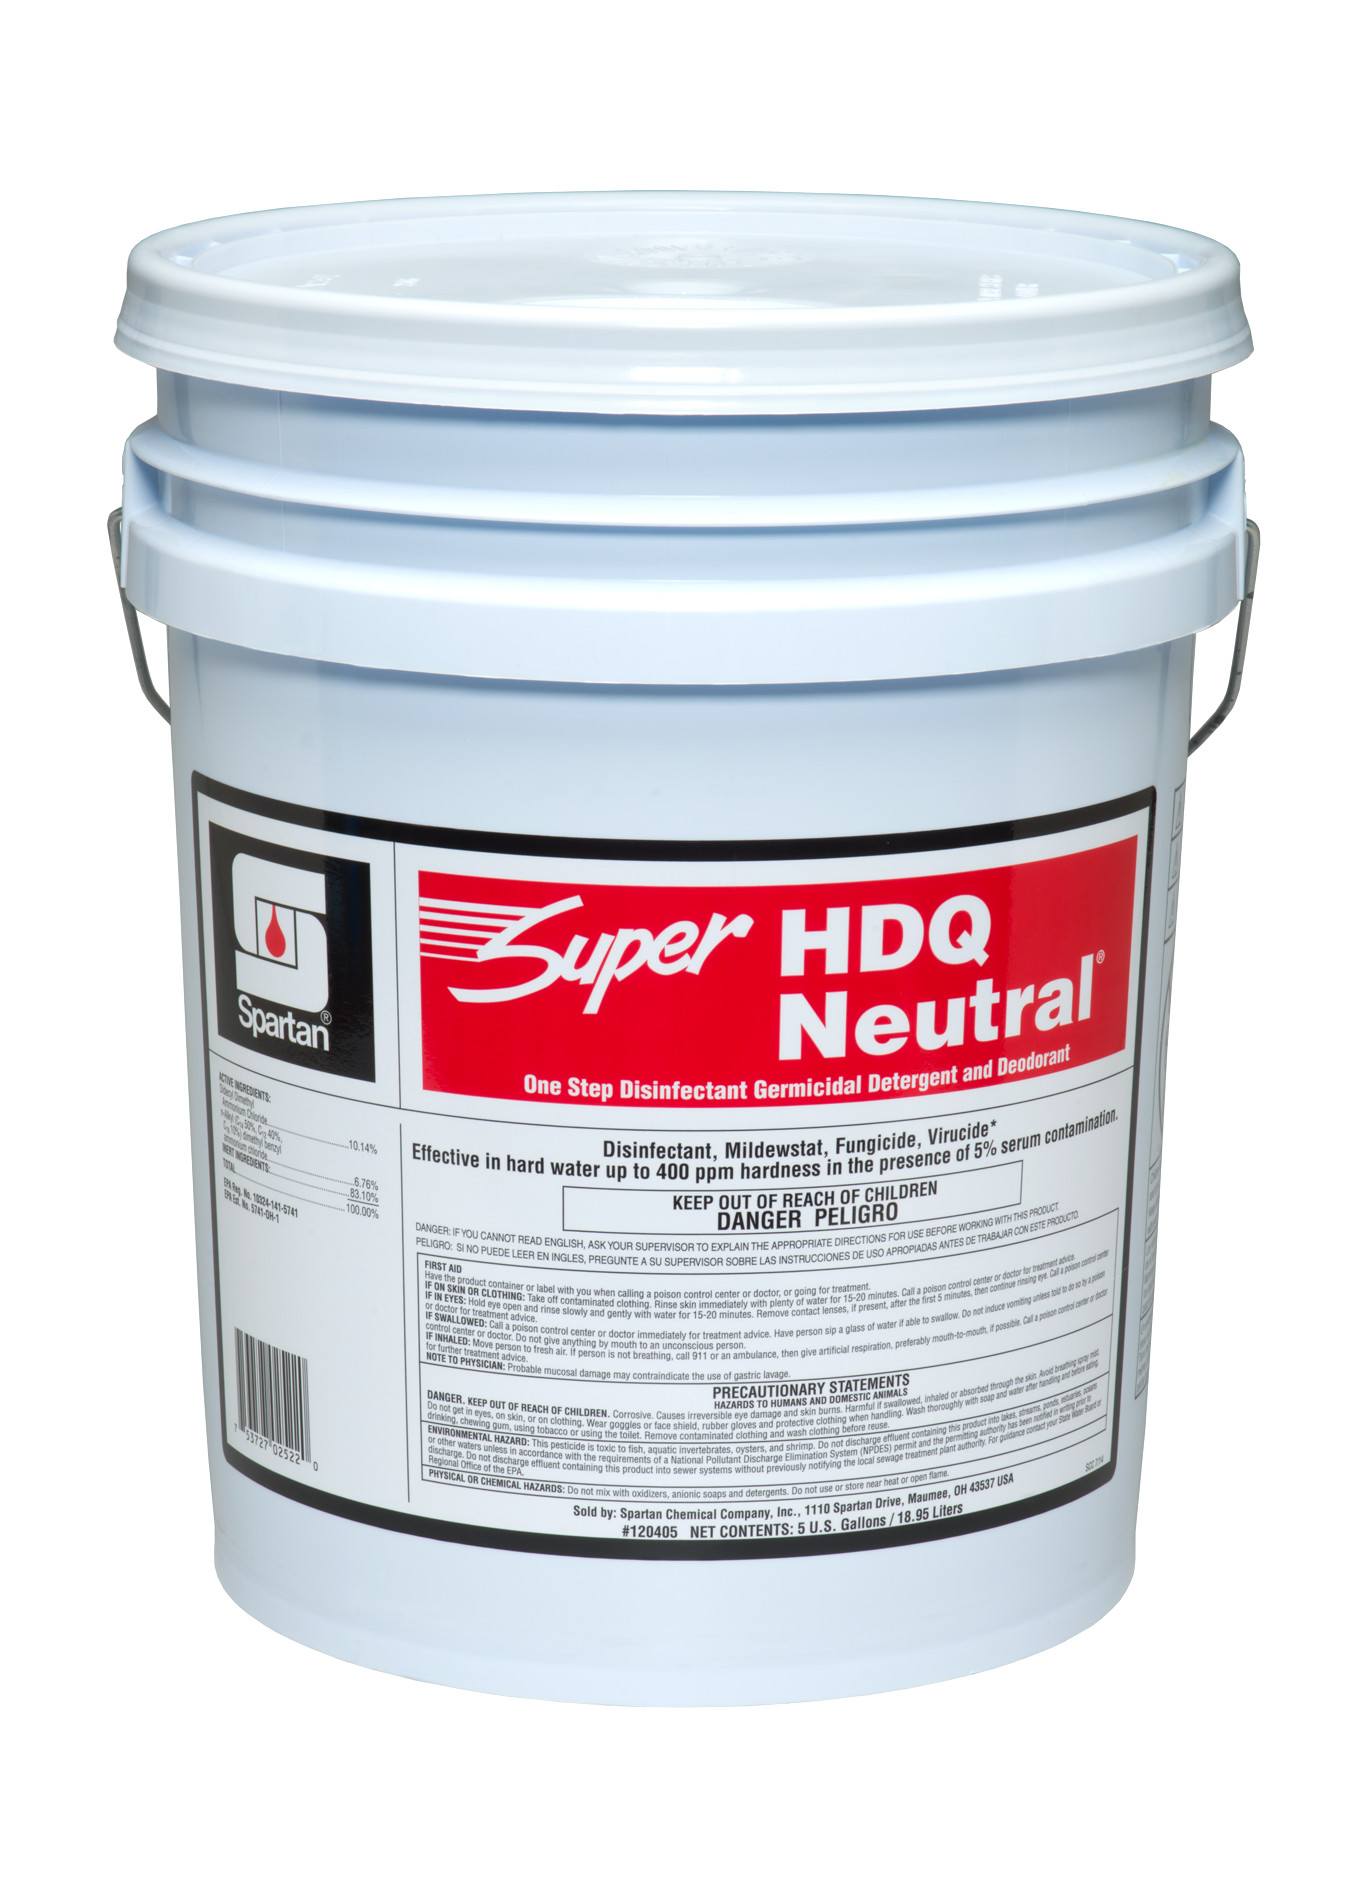 Spartan Chemical Company Super HDQ Neutral, 5 GAL PAIL